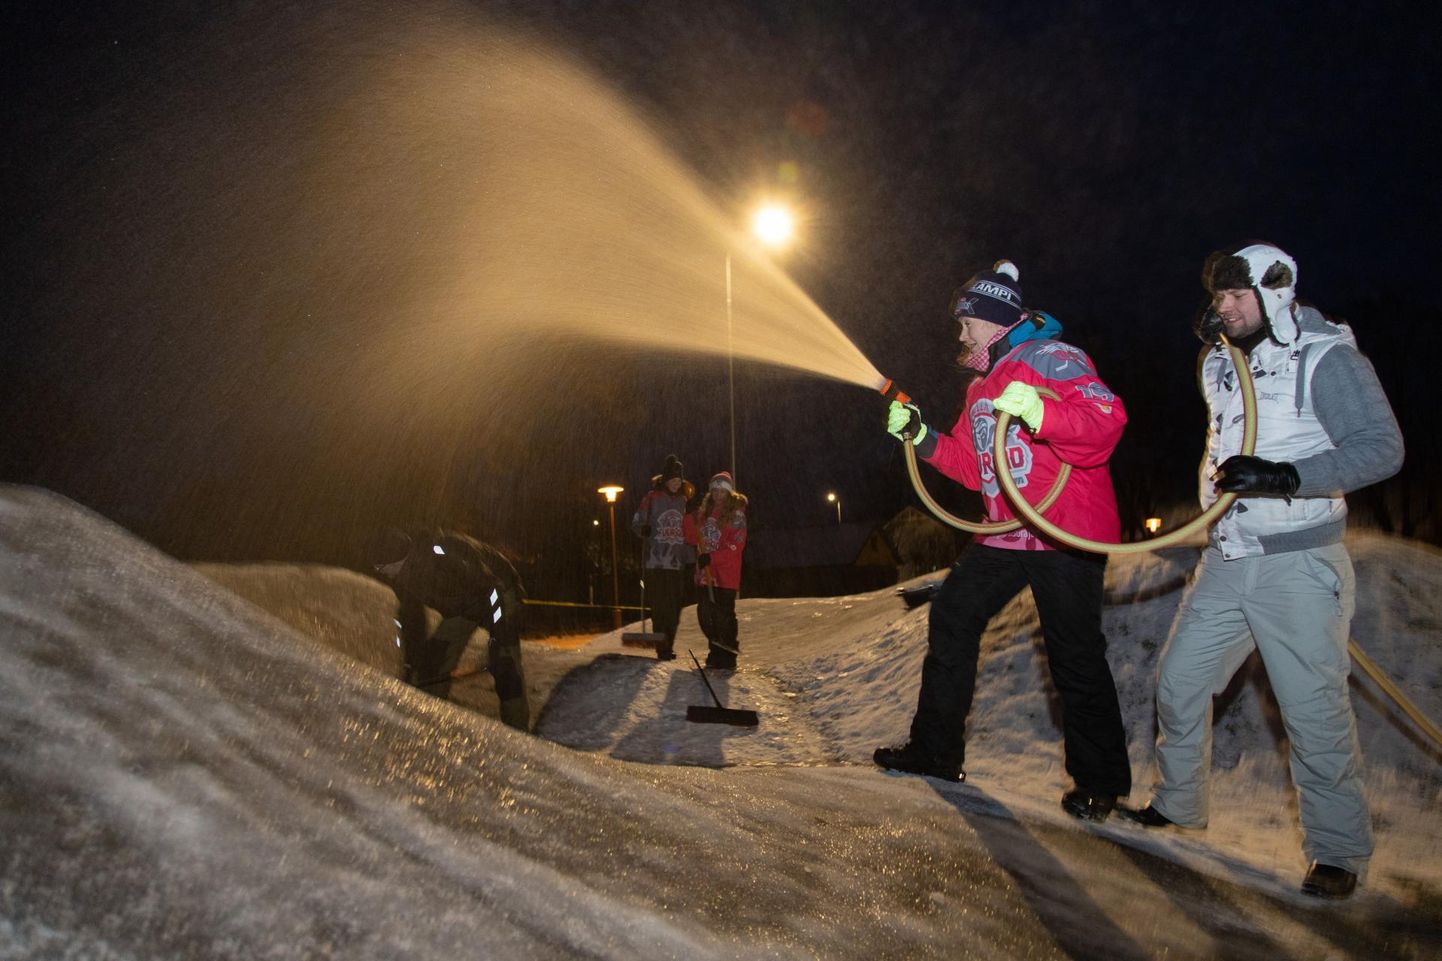 Eelmise nädala lõpust on vabatahtlikud eesotsas naiste hokiklubiga Fellin Fuuriad kastnud Viljandi Lastepargi pumprada. Fotol on esiplaanil kastmishoos Kristi Seppa.